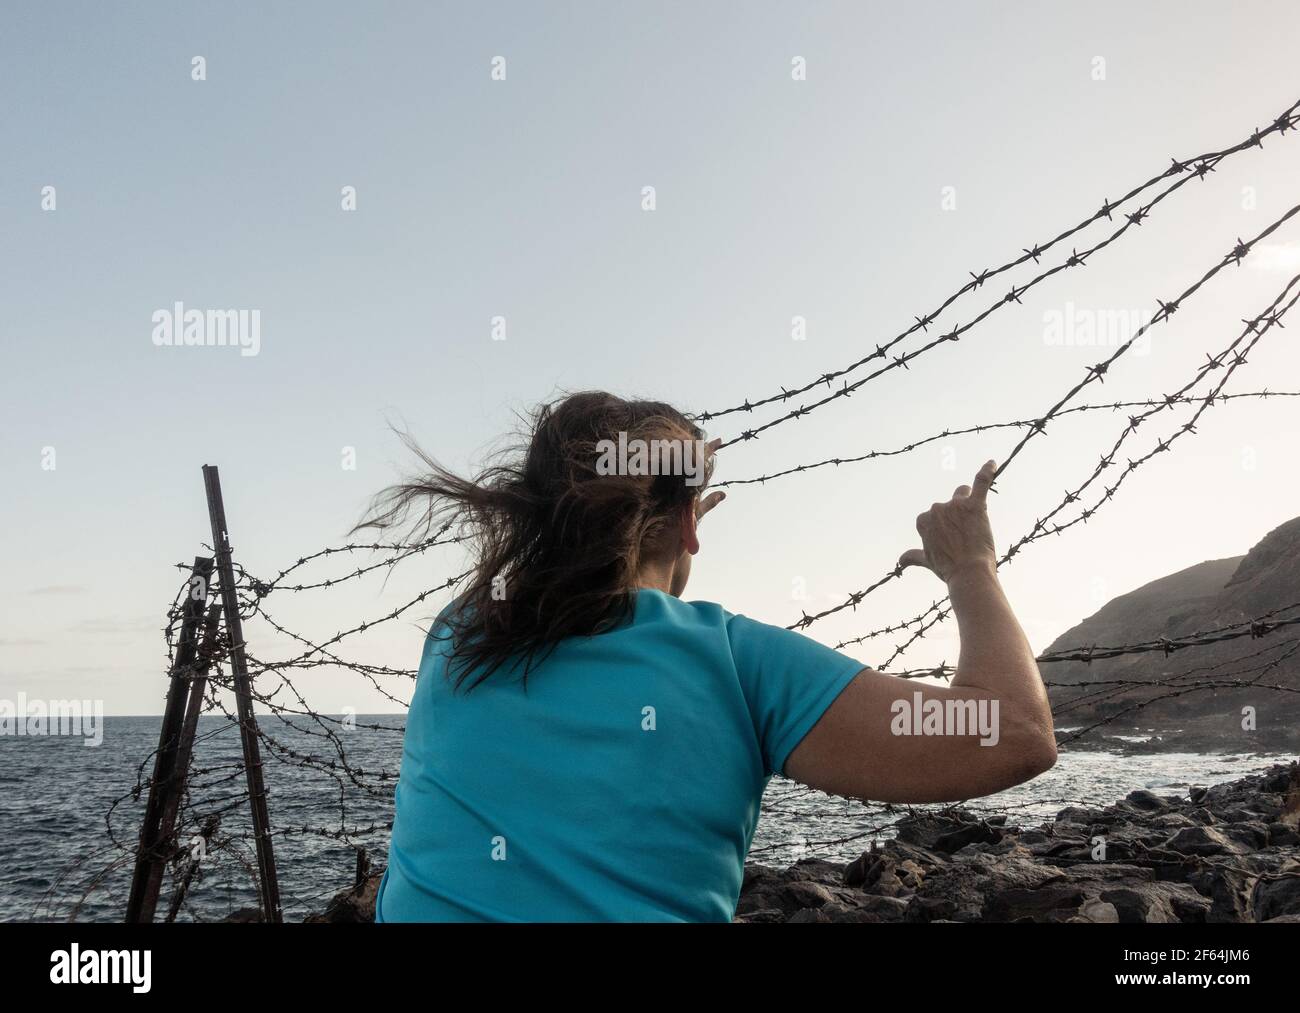 Donna dietro recinzione costiero spinato: Asilo, Brexit, immigranti illegali, traffico di esseri umani, schiavitù, violenza domestica..., concetto Foto Stock